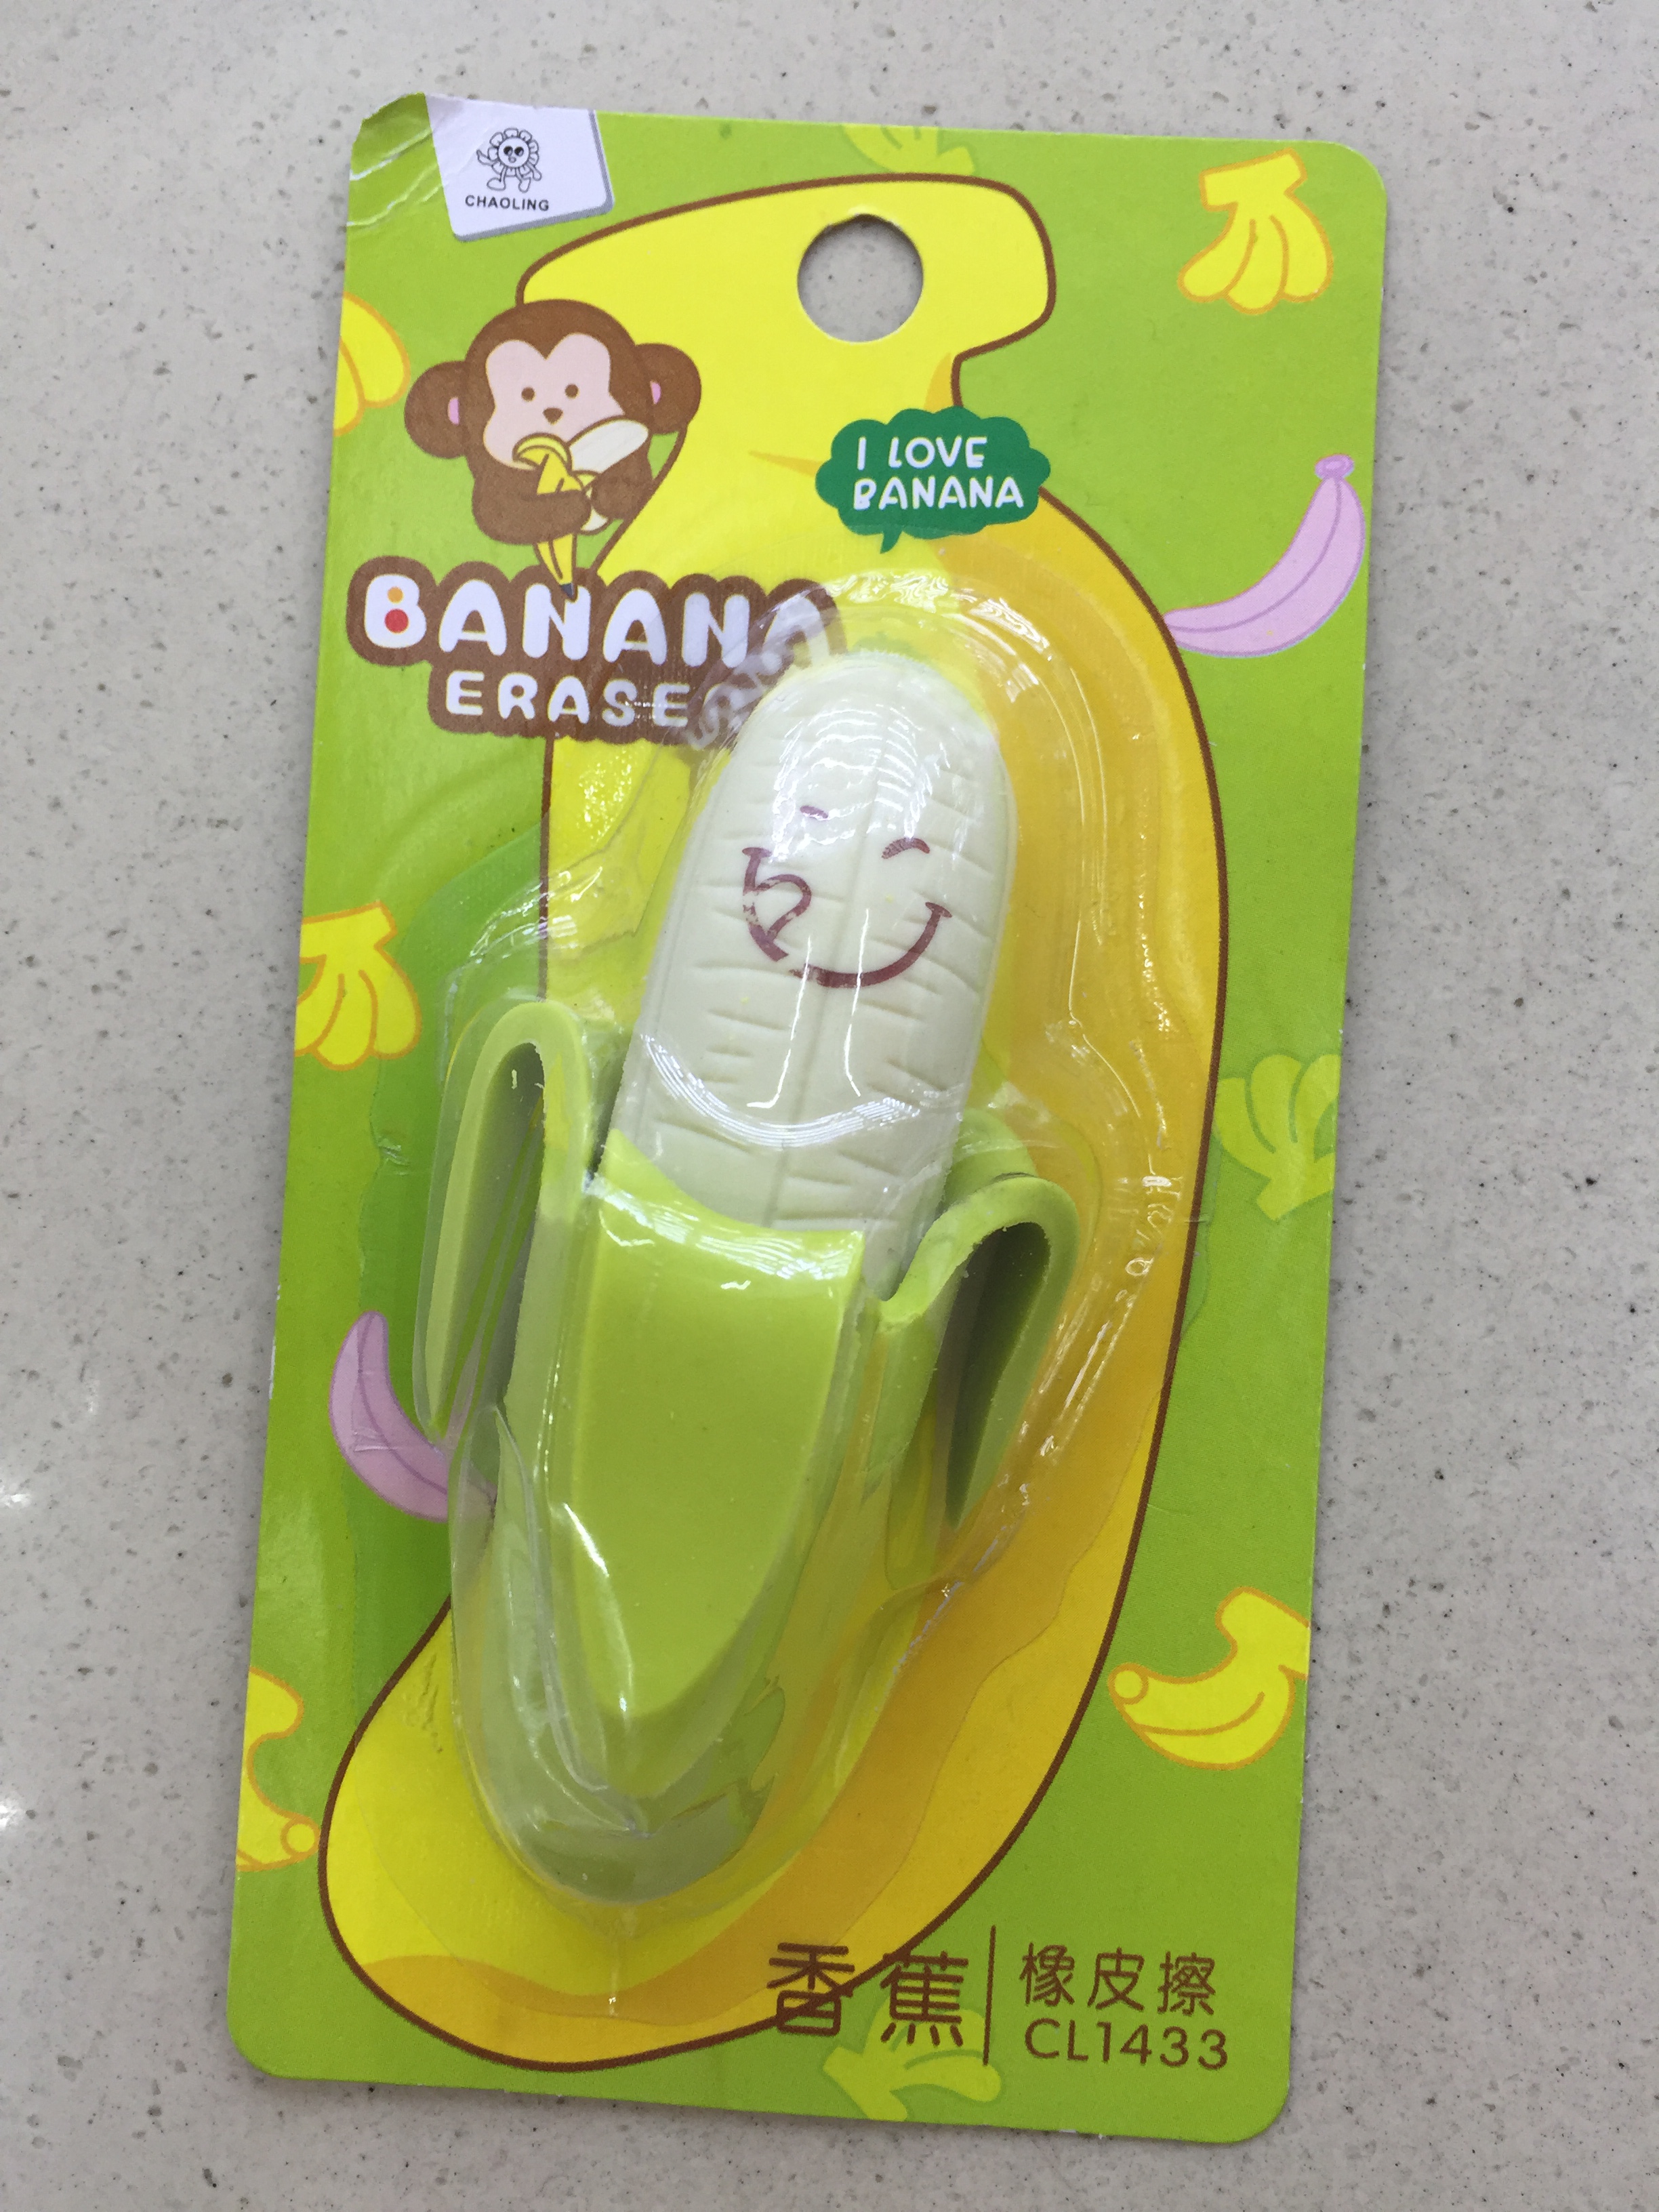 超灵新款香蕉橡皮擦 可爱造型橡皮擦 学生奖品小礼物 橡皮批发